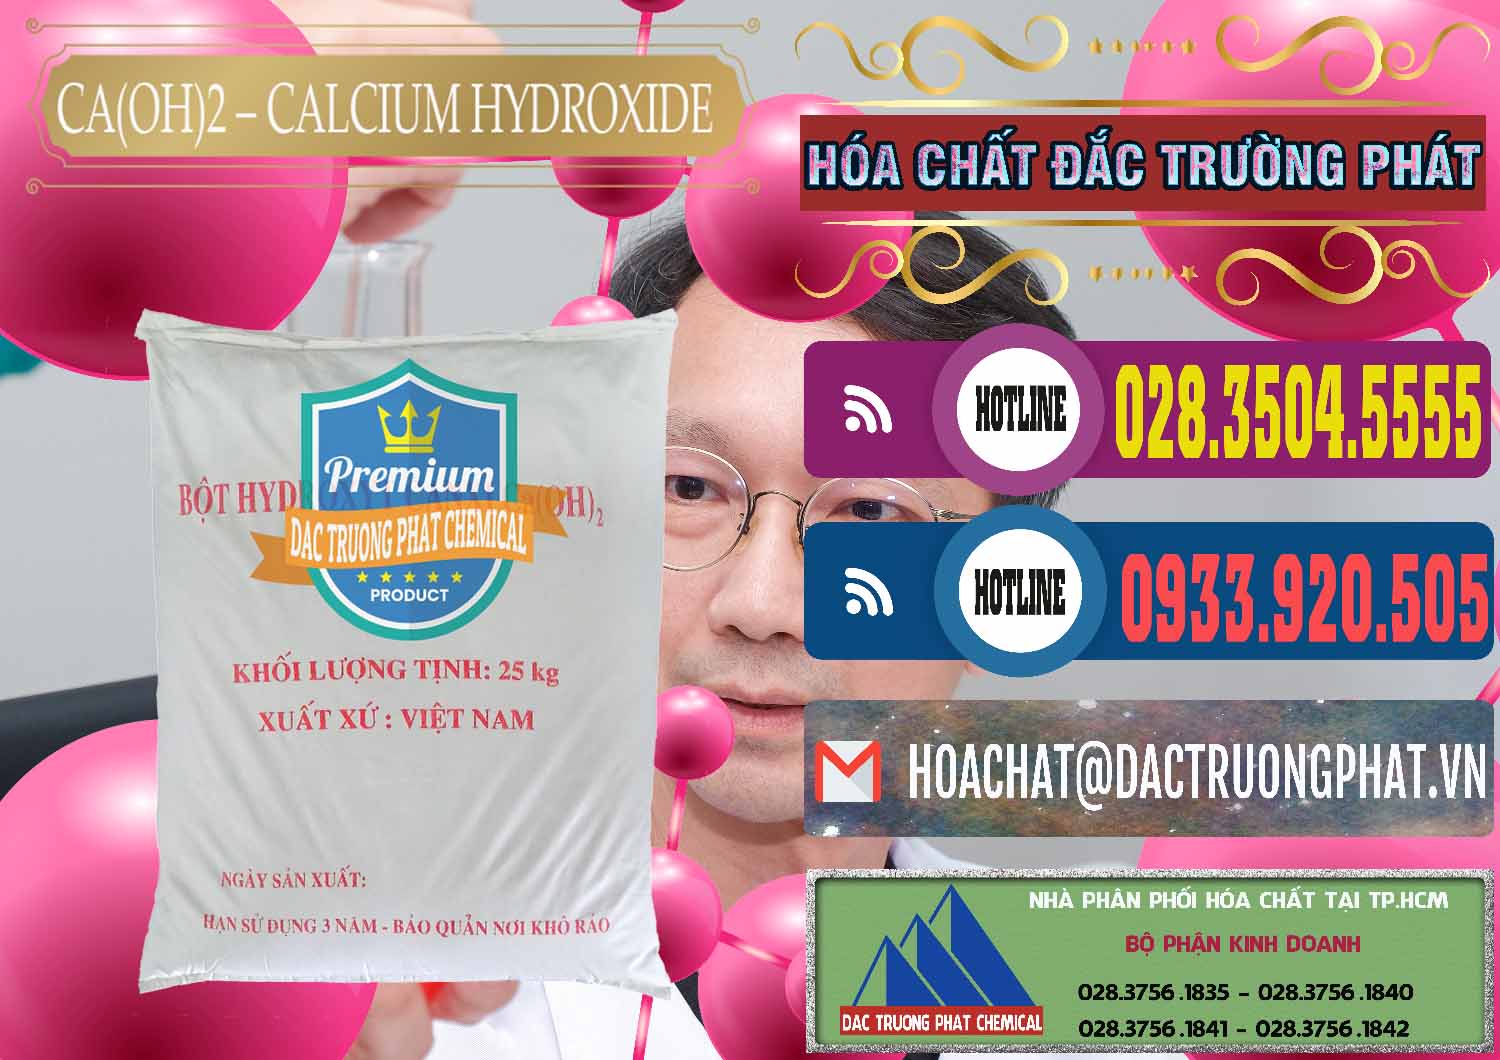 Nơi chuyên bán _ phân phối Ca(OH)2 - Calcium Hydroxide Việt Nam - 0186 - Cty chuyên phân phối và kinh doanh hóa chất tại TP.HCM - muabanhoachat.com.vn